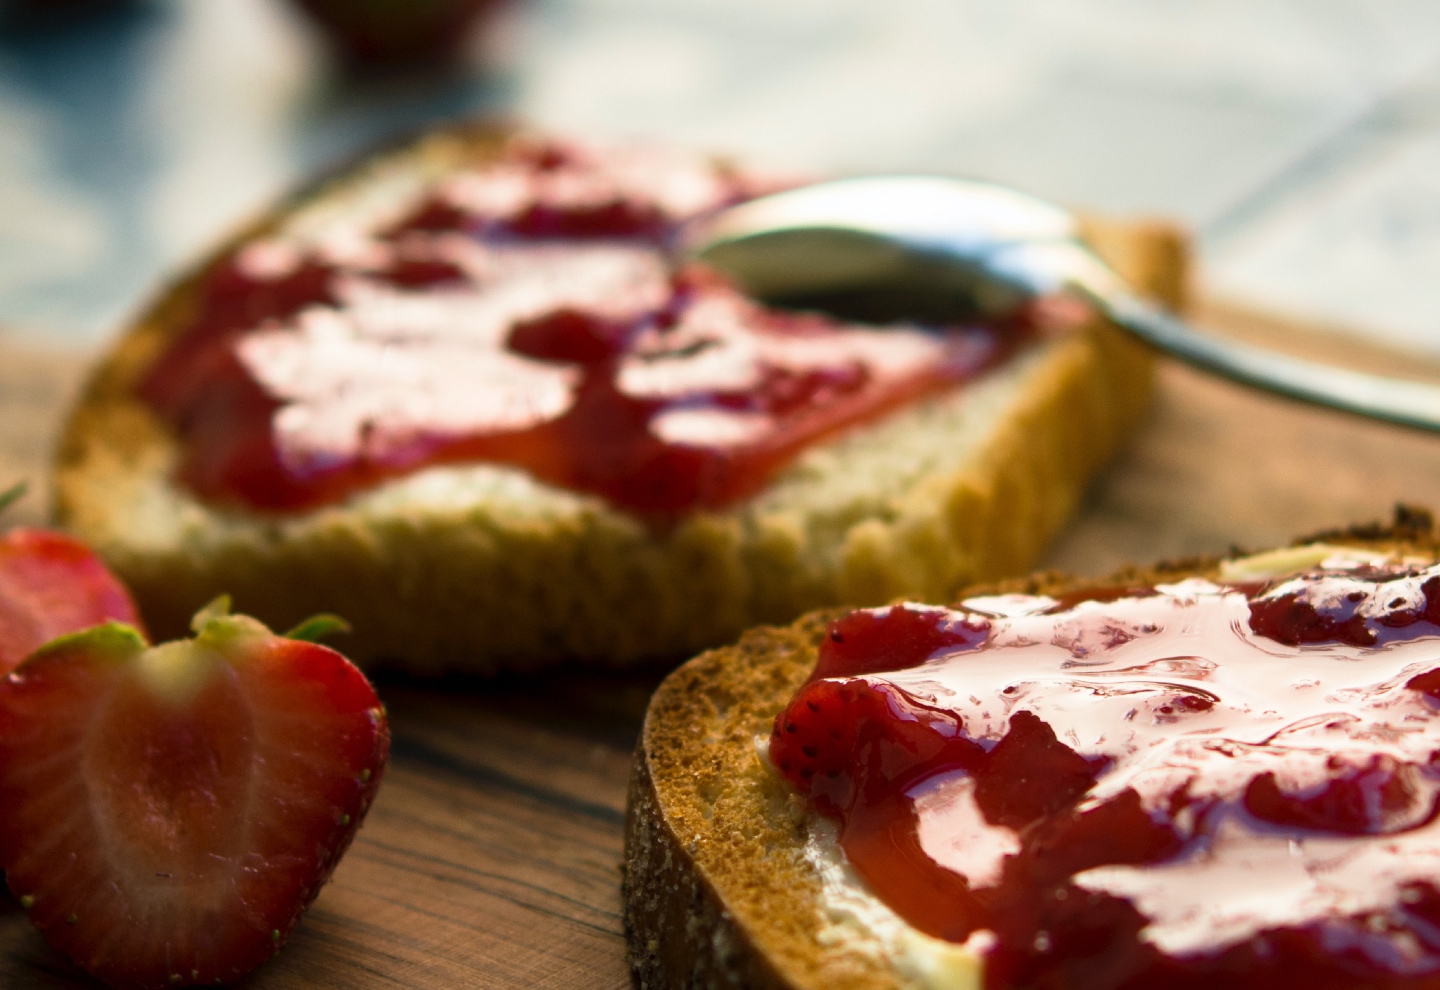 Homemade jam never tasted so good: focus on the basics in 2021